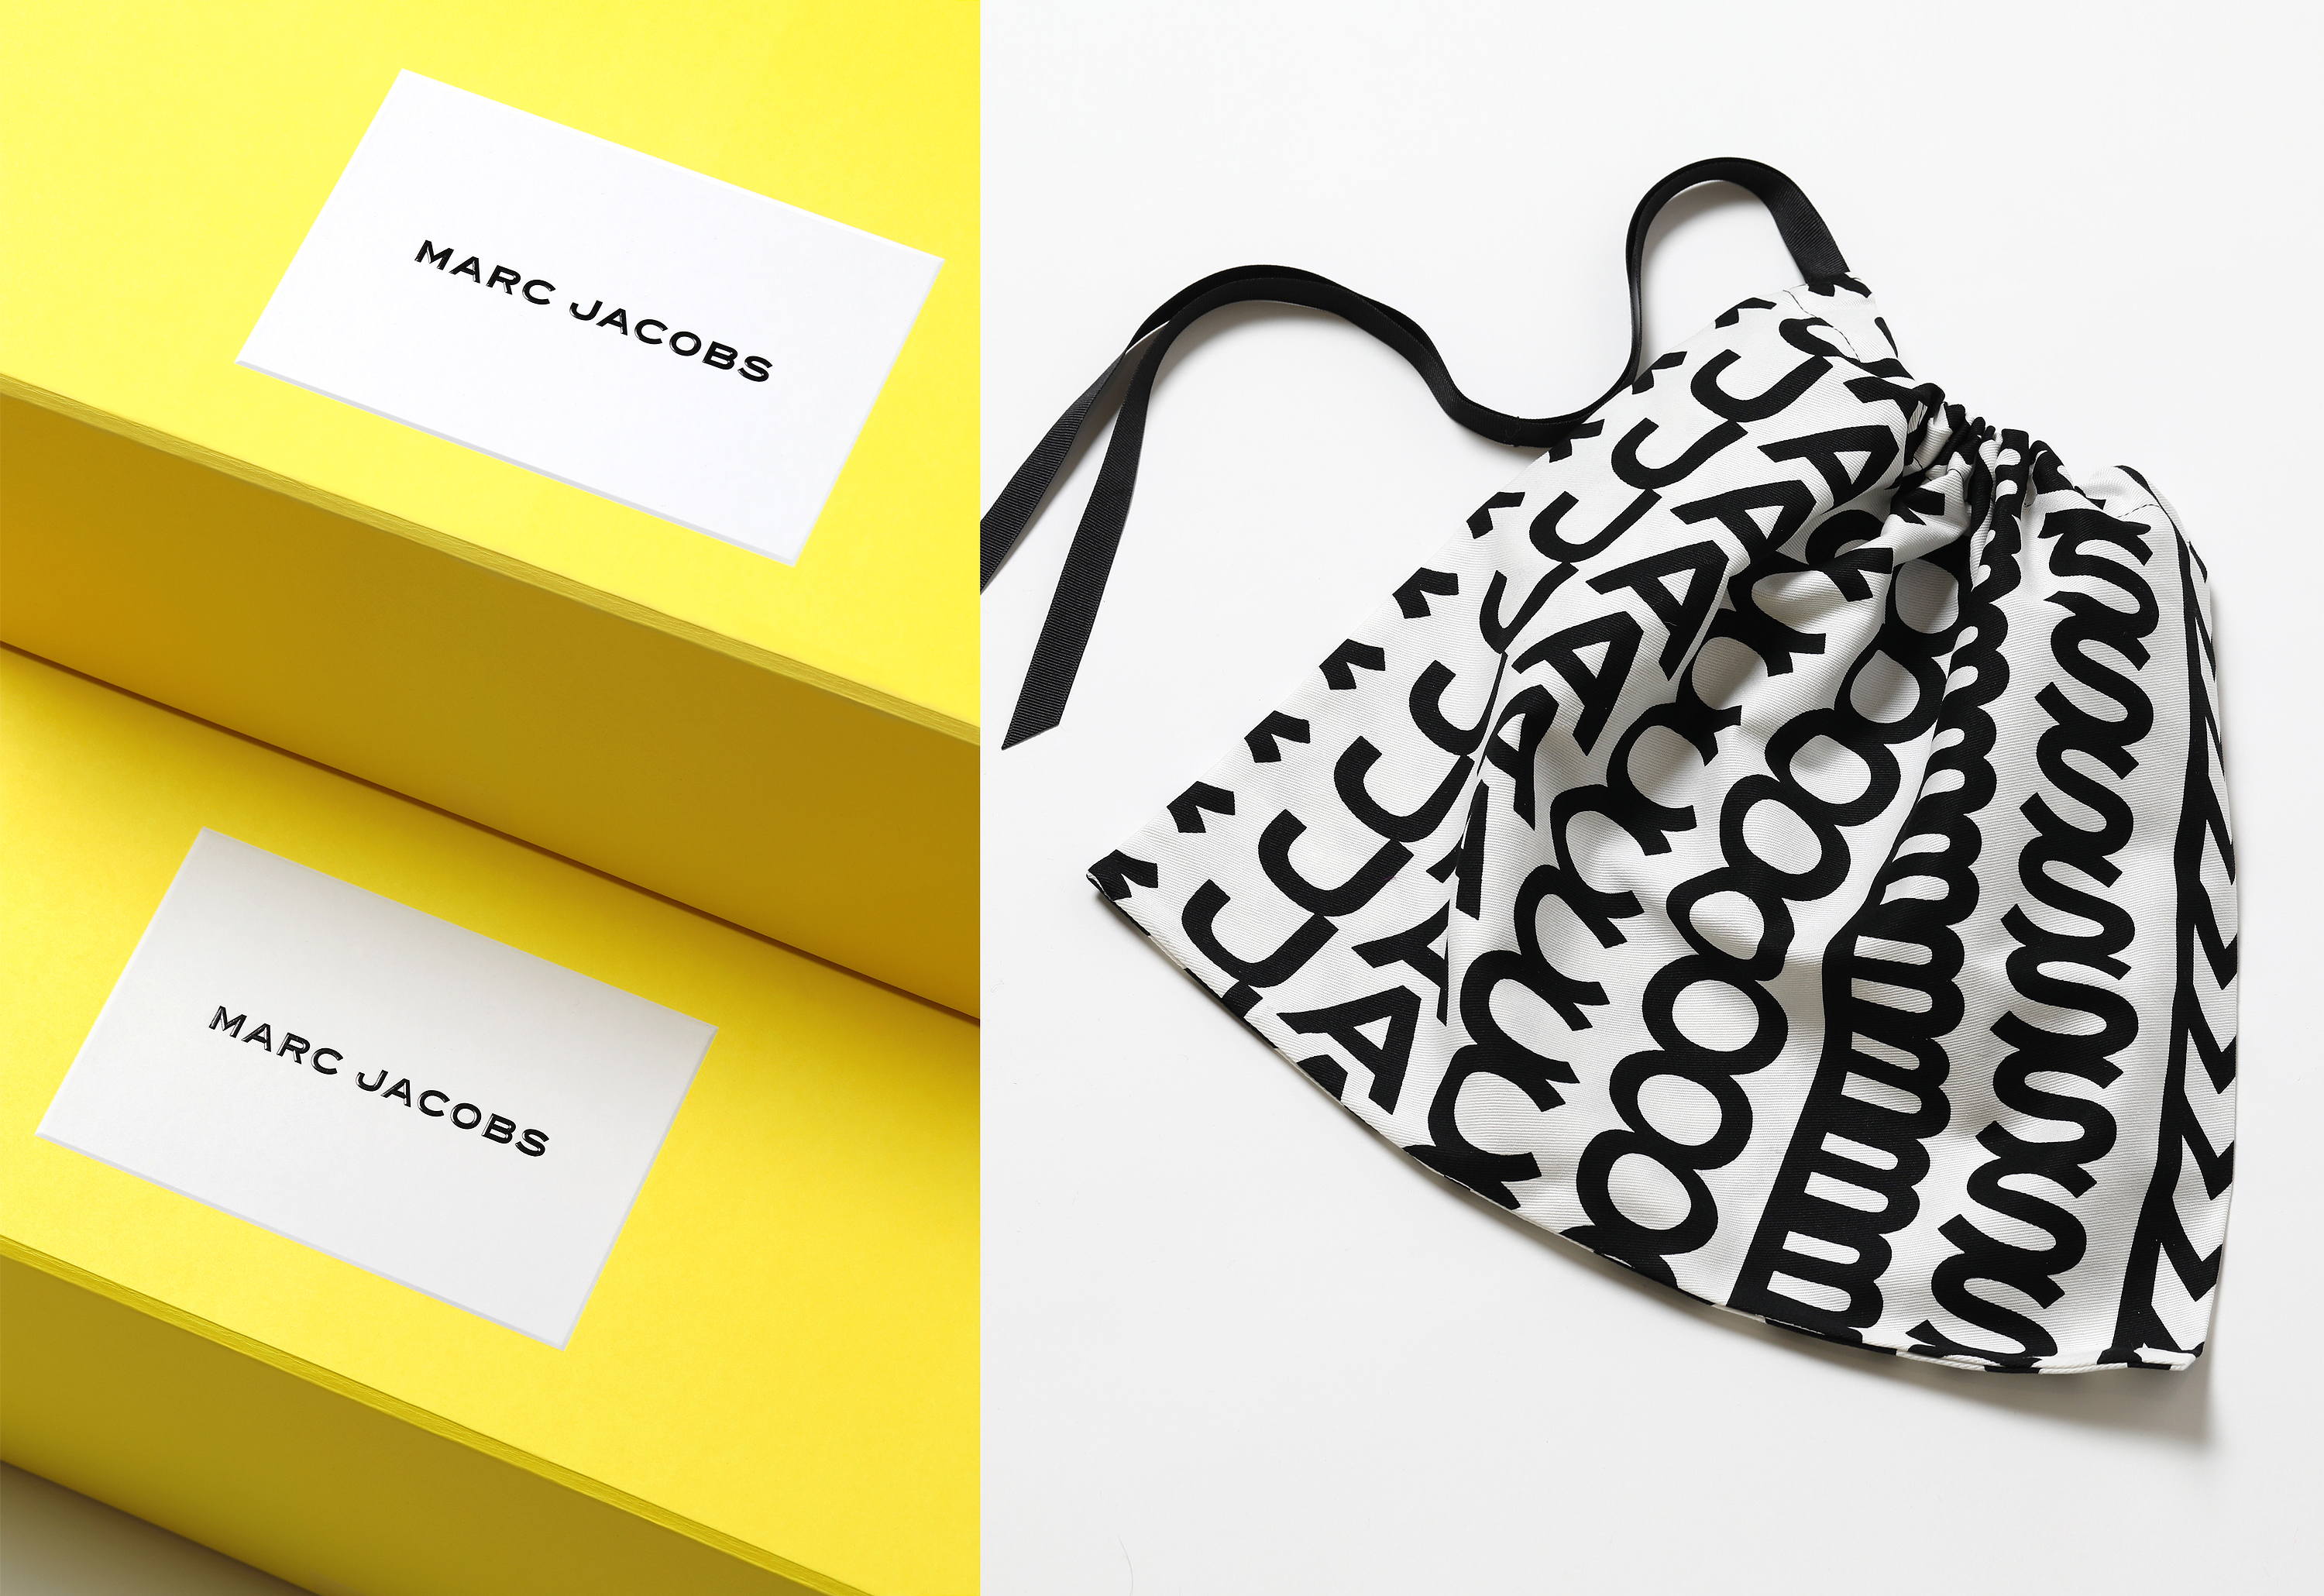 Identitas merek dan kemasan baru untuk Marc Jacobs oleh studio desain New York Triboro